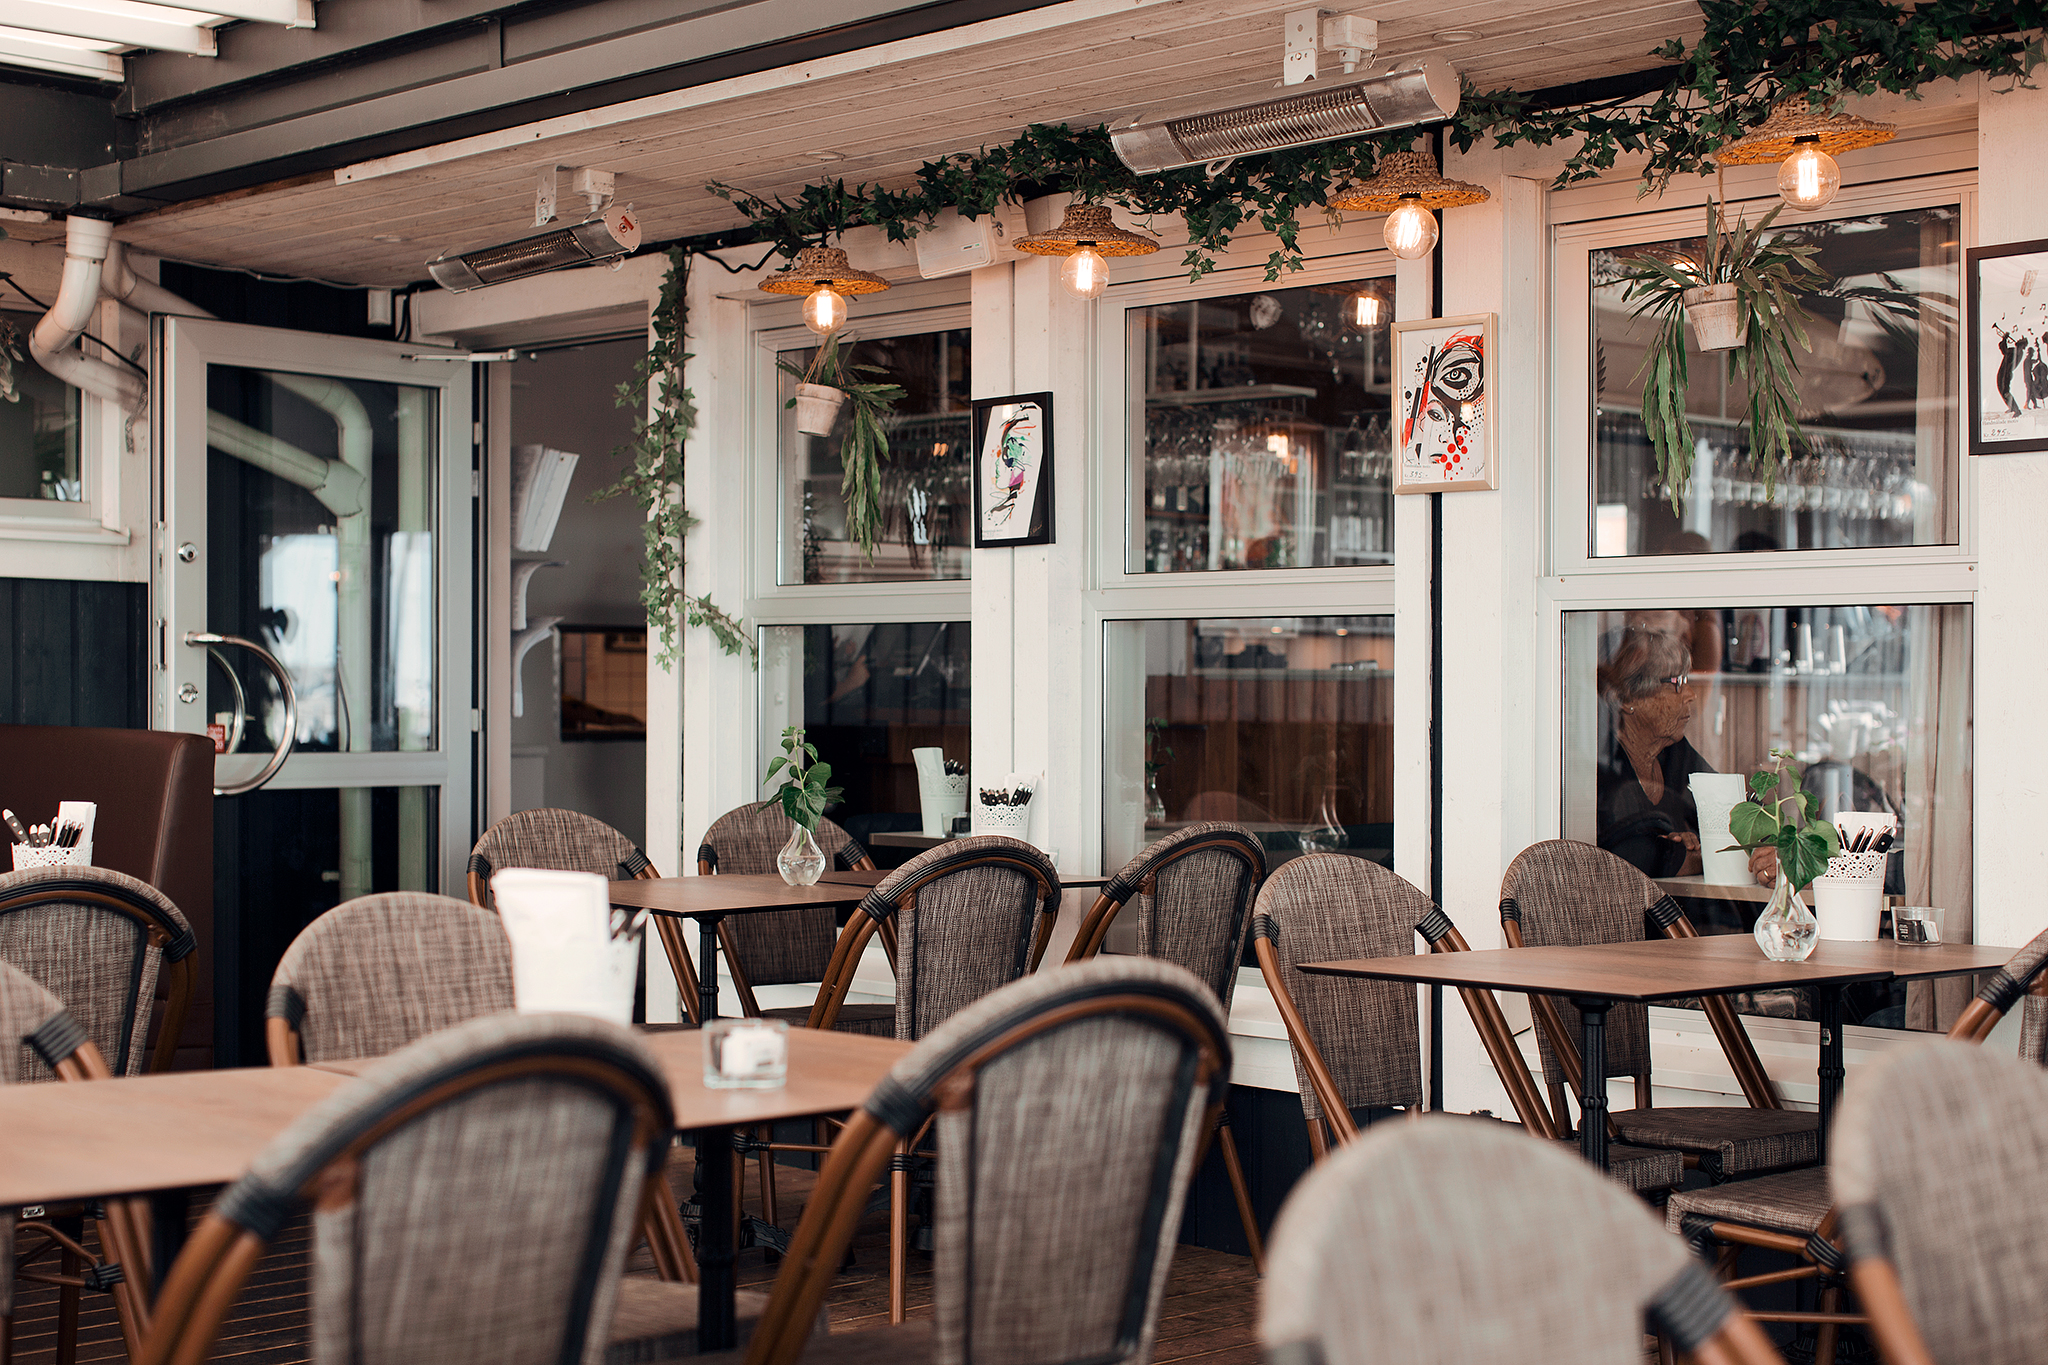 Restaurang Marinan i Ystad​